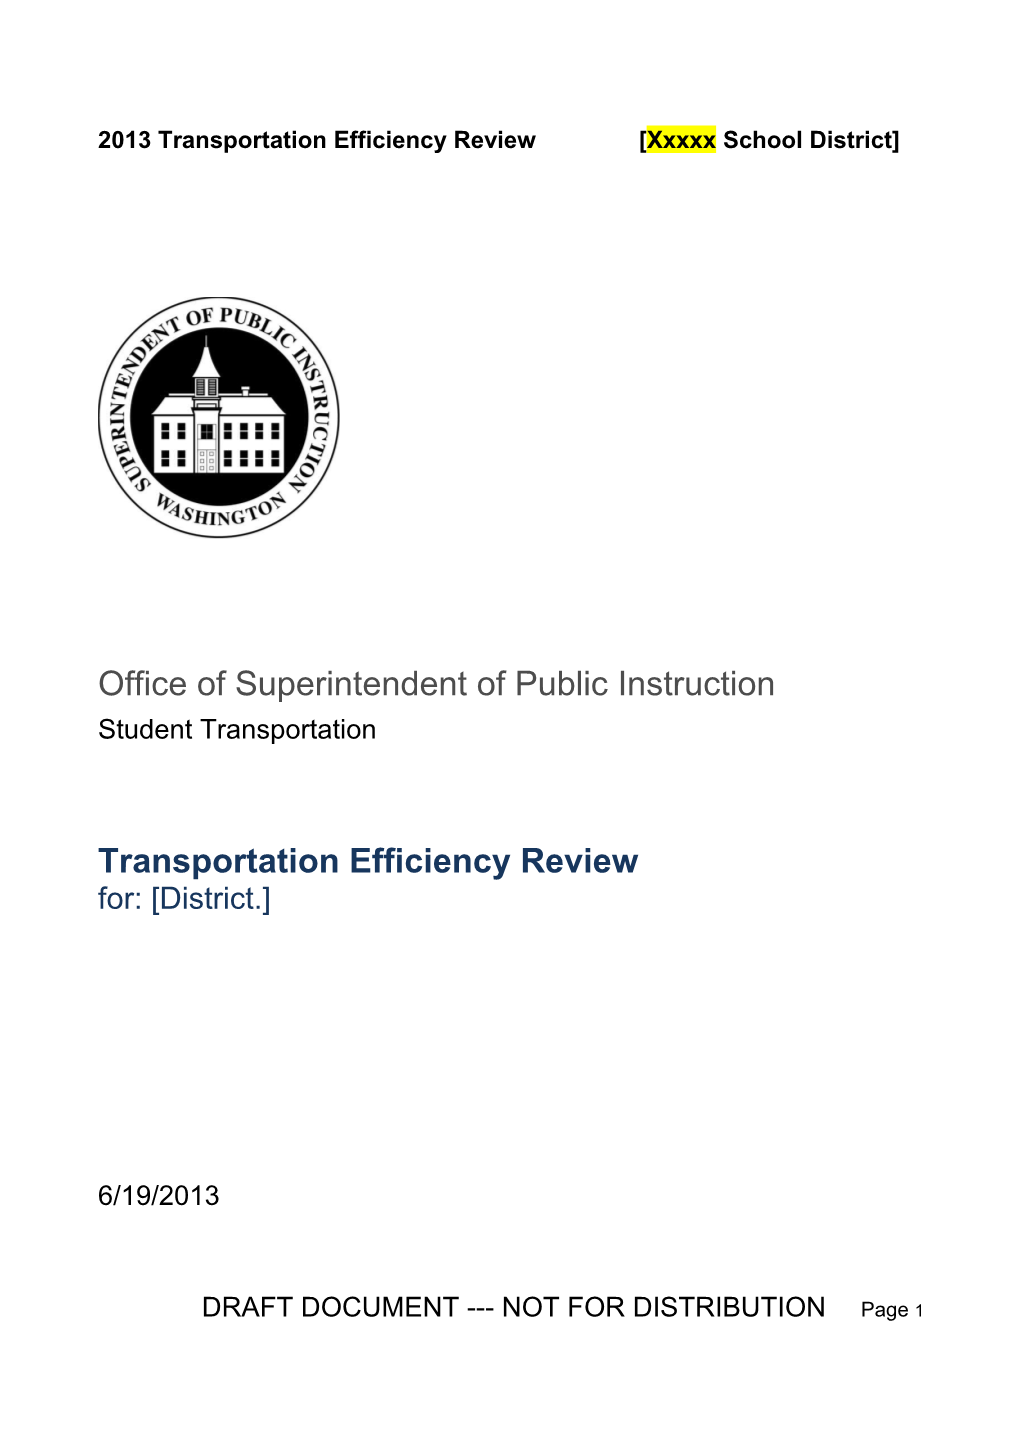 2013 Transportation Efficiency Review Xxxxxschool District